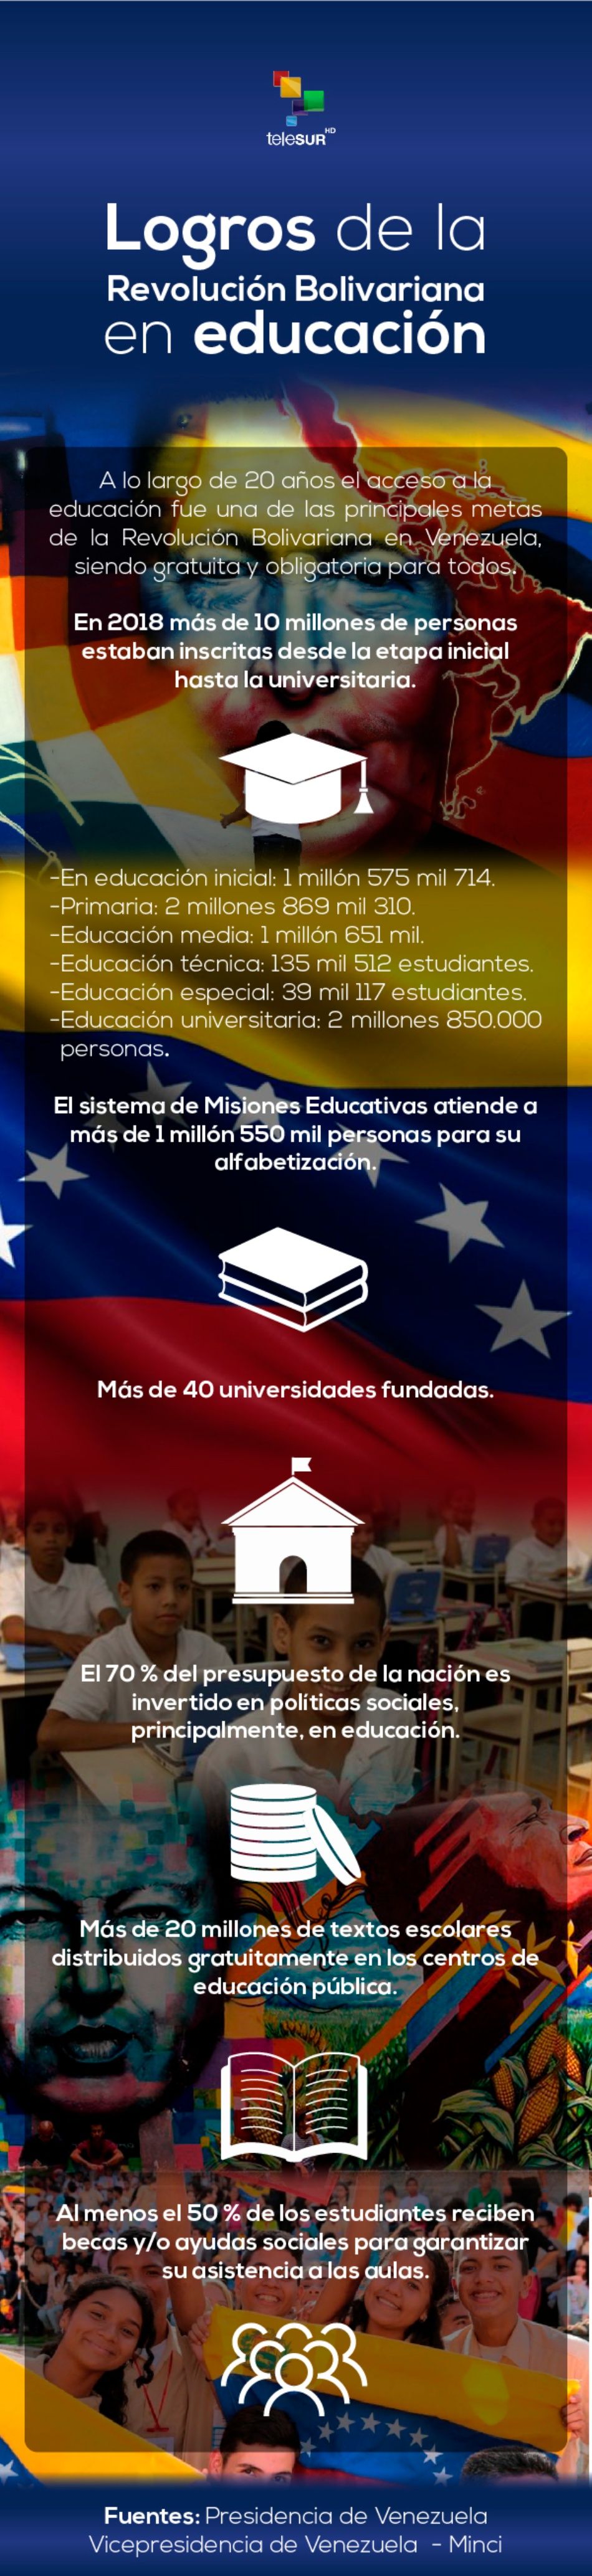 Revolución Bolivariana: 20 años de logros en educación